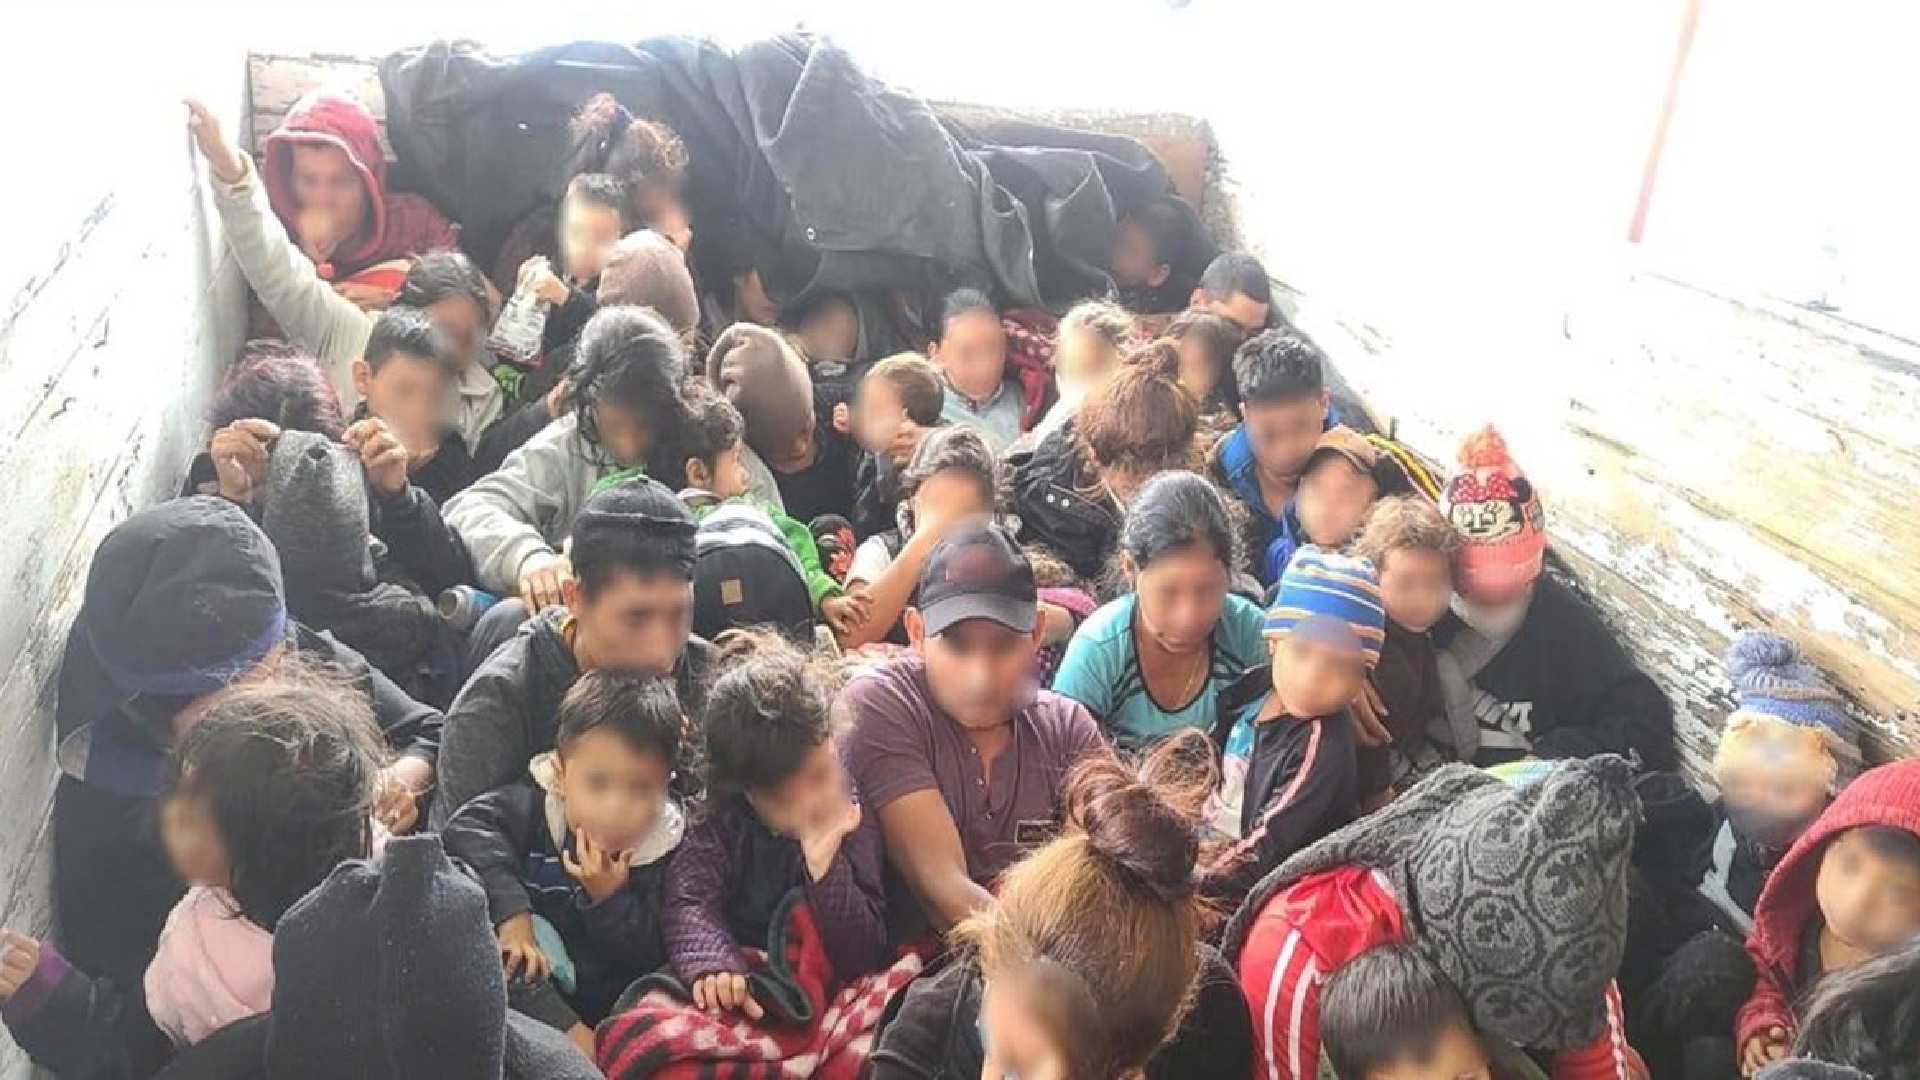 Guardia Nacional localizó a 61 migrantes centroamericanos en condiciones de hacinamiento en Nuevo León